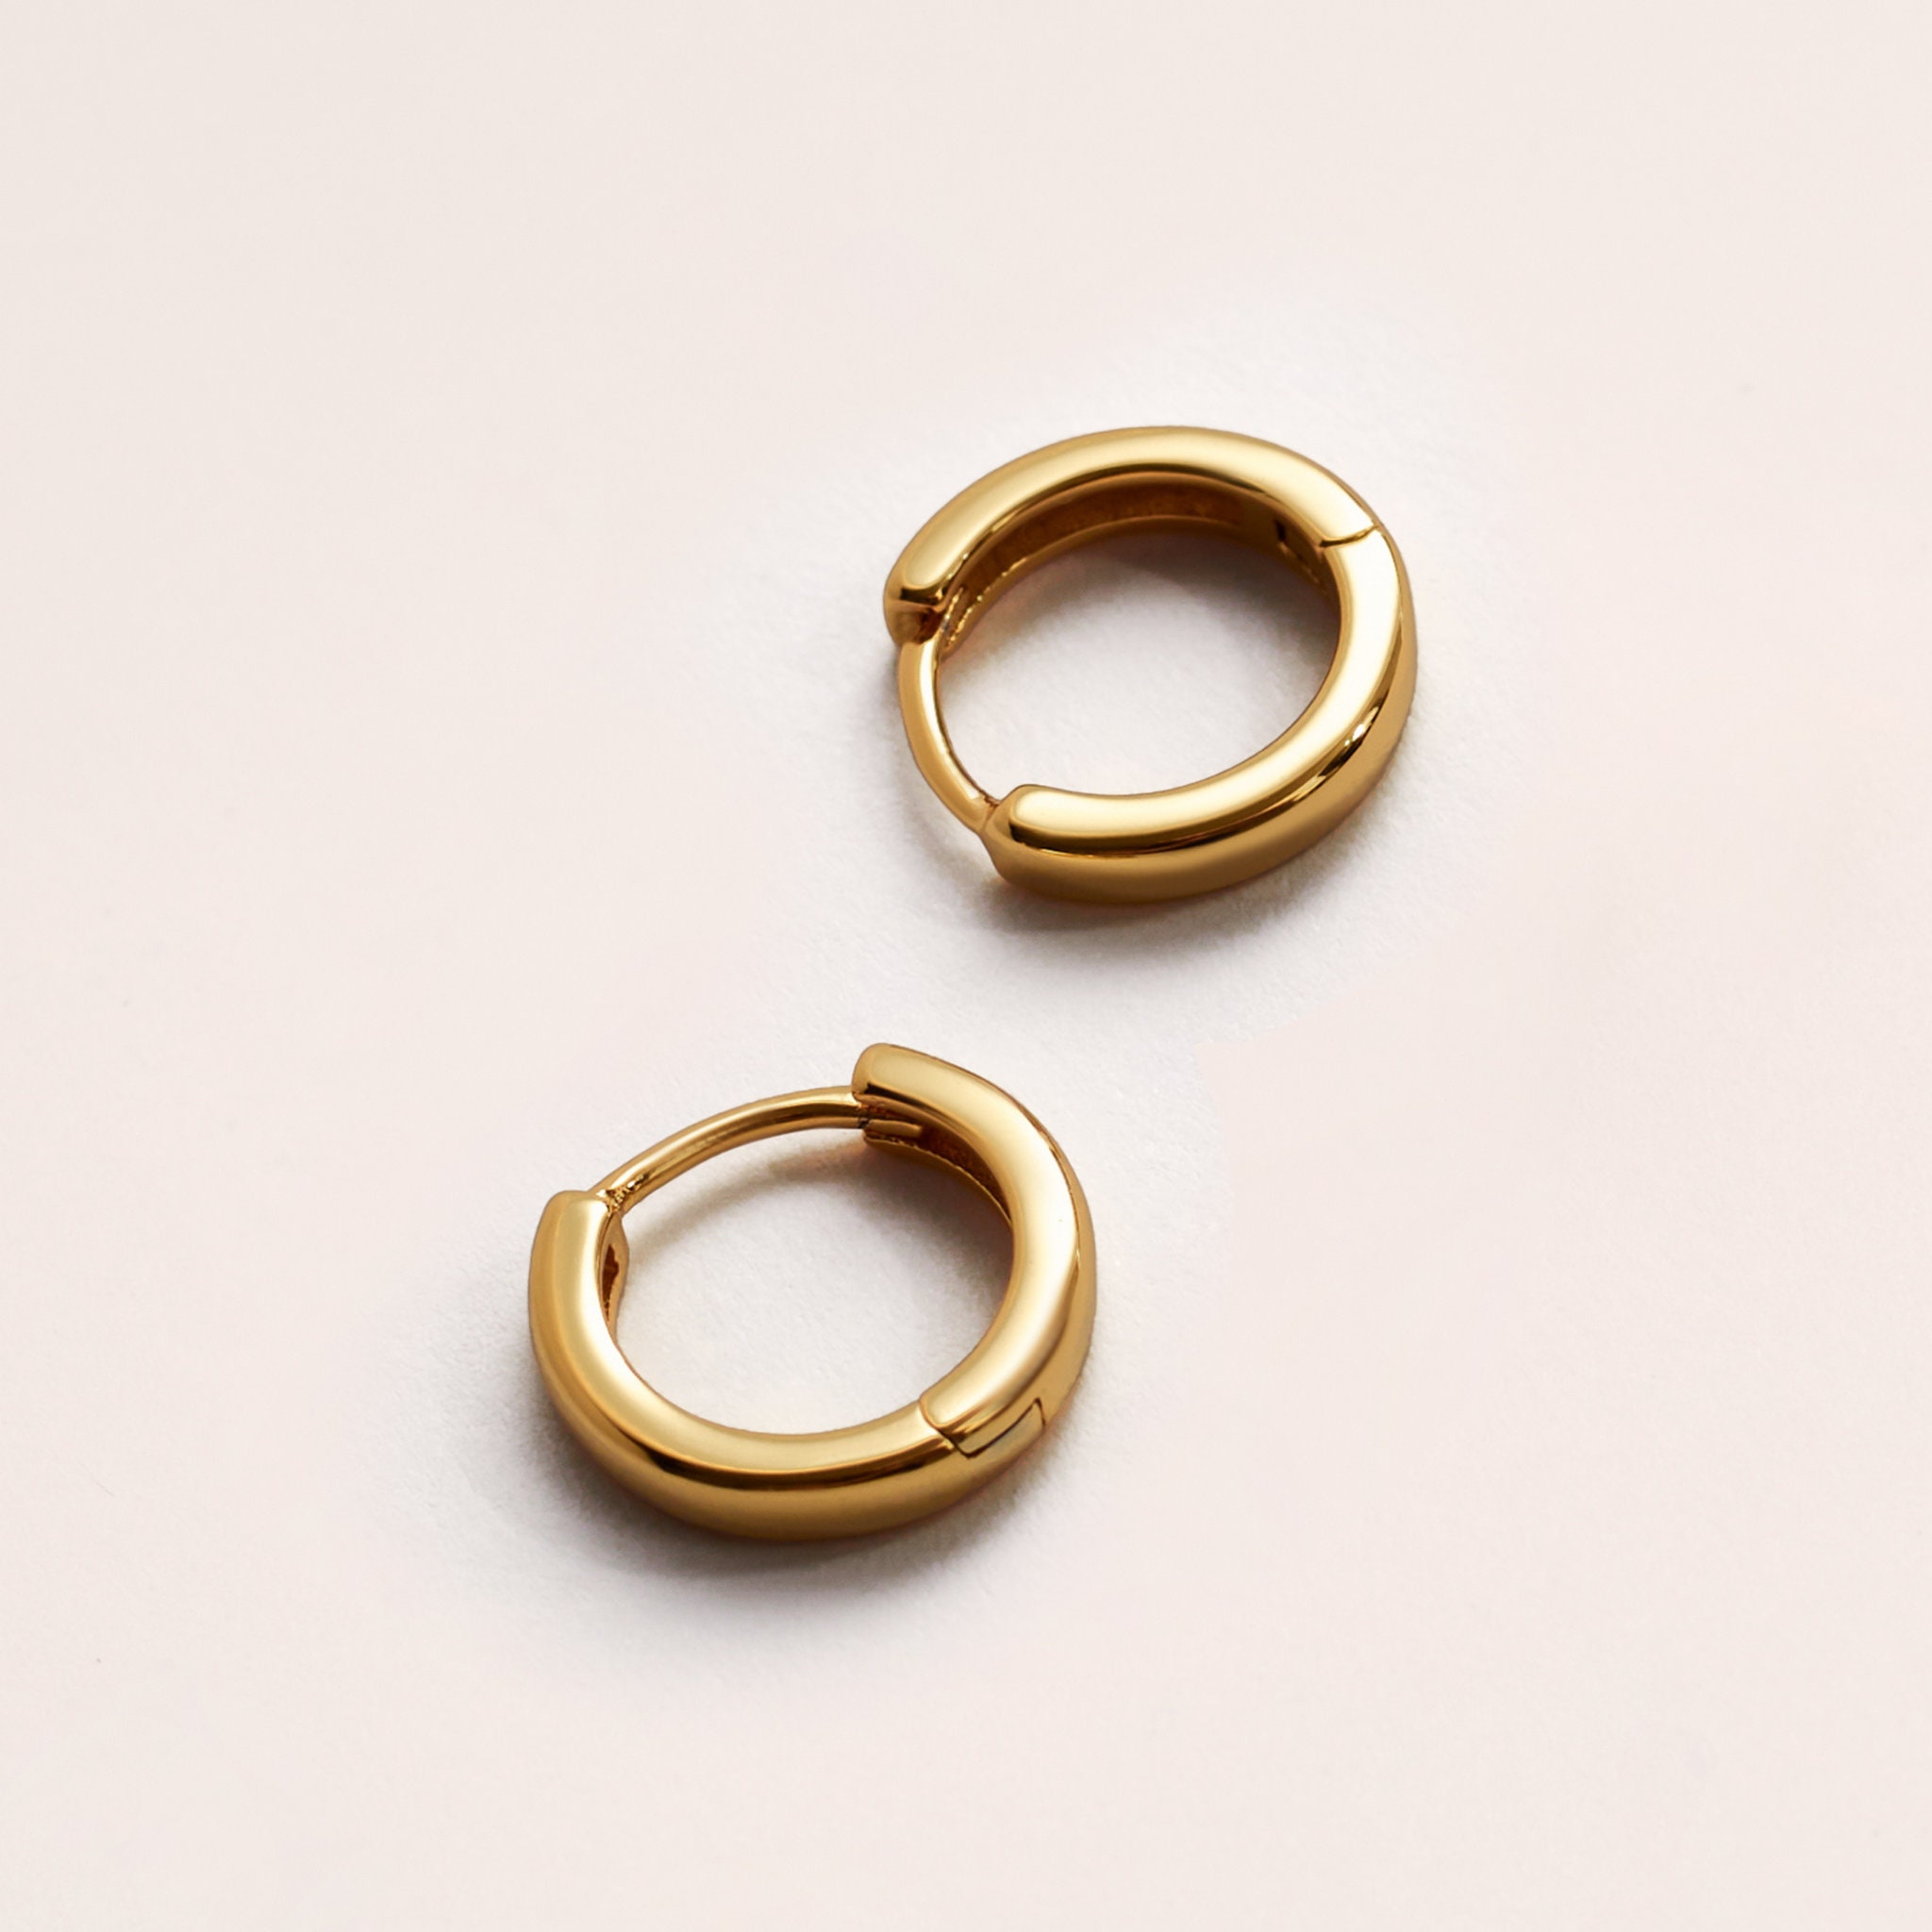 24K Gold Filled 925 Sterling Silver - 12mm Earrings Everyday Huggie Hoops UK Elegant Dainty Simple Hoop Gifts For Her